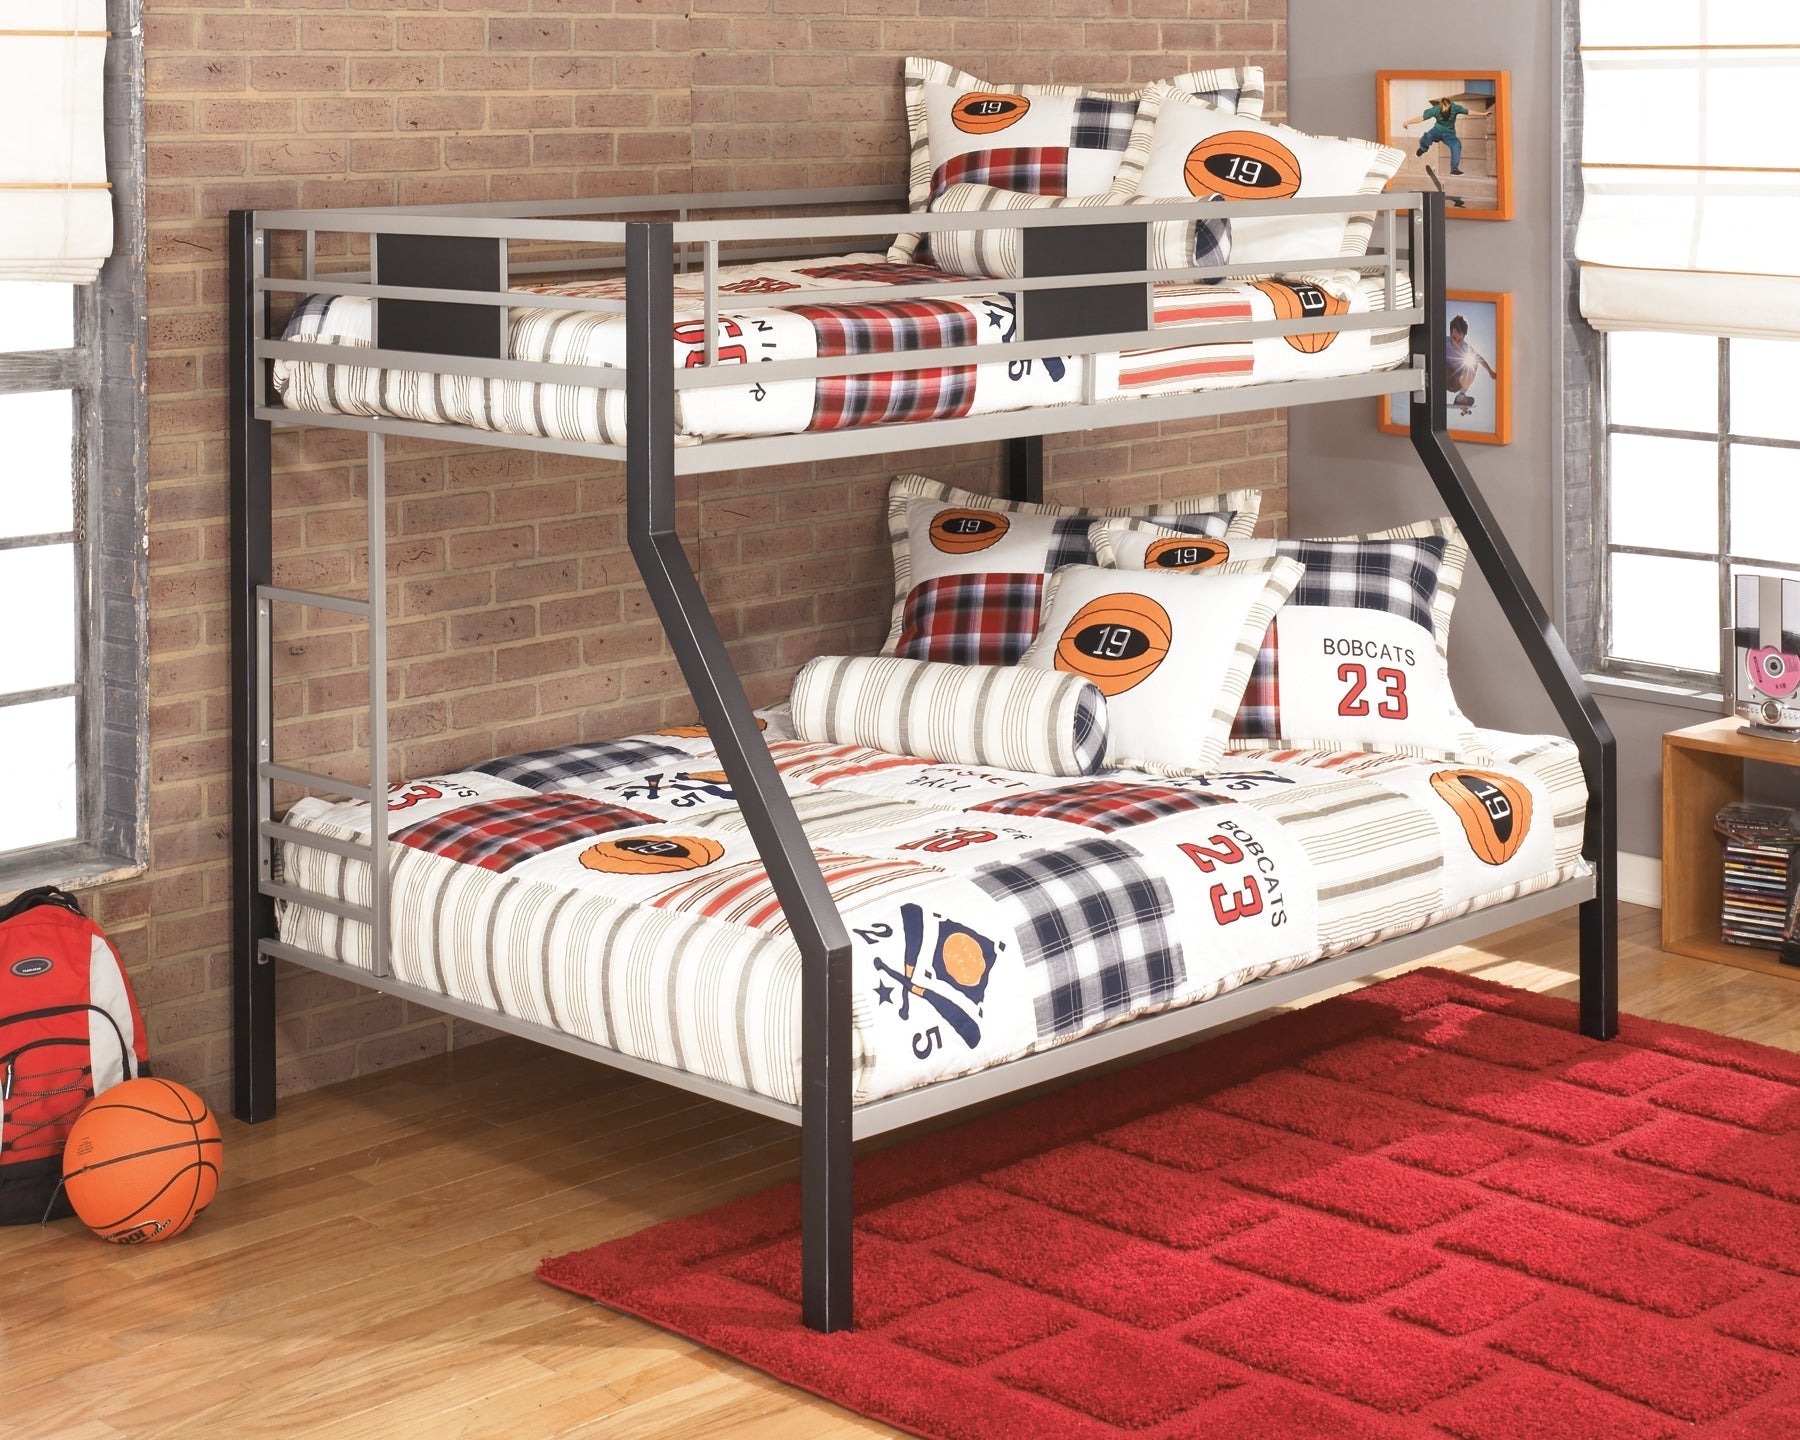 Dinsmore Twin/Full Bunk Bed w/Ladder Smyrna Furniture Outlet